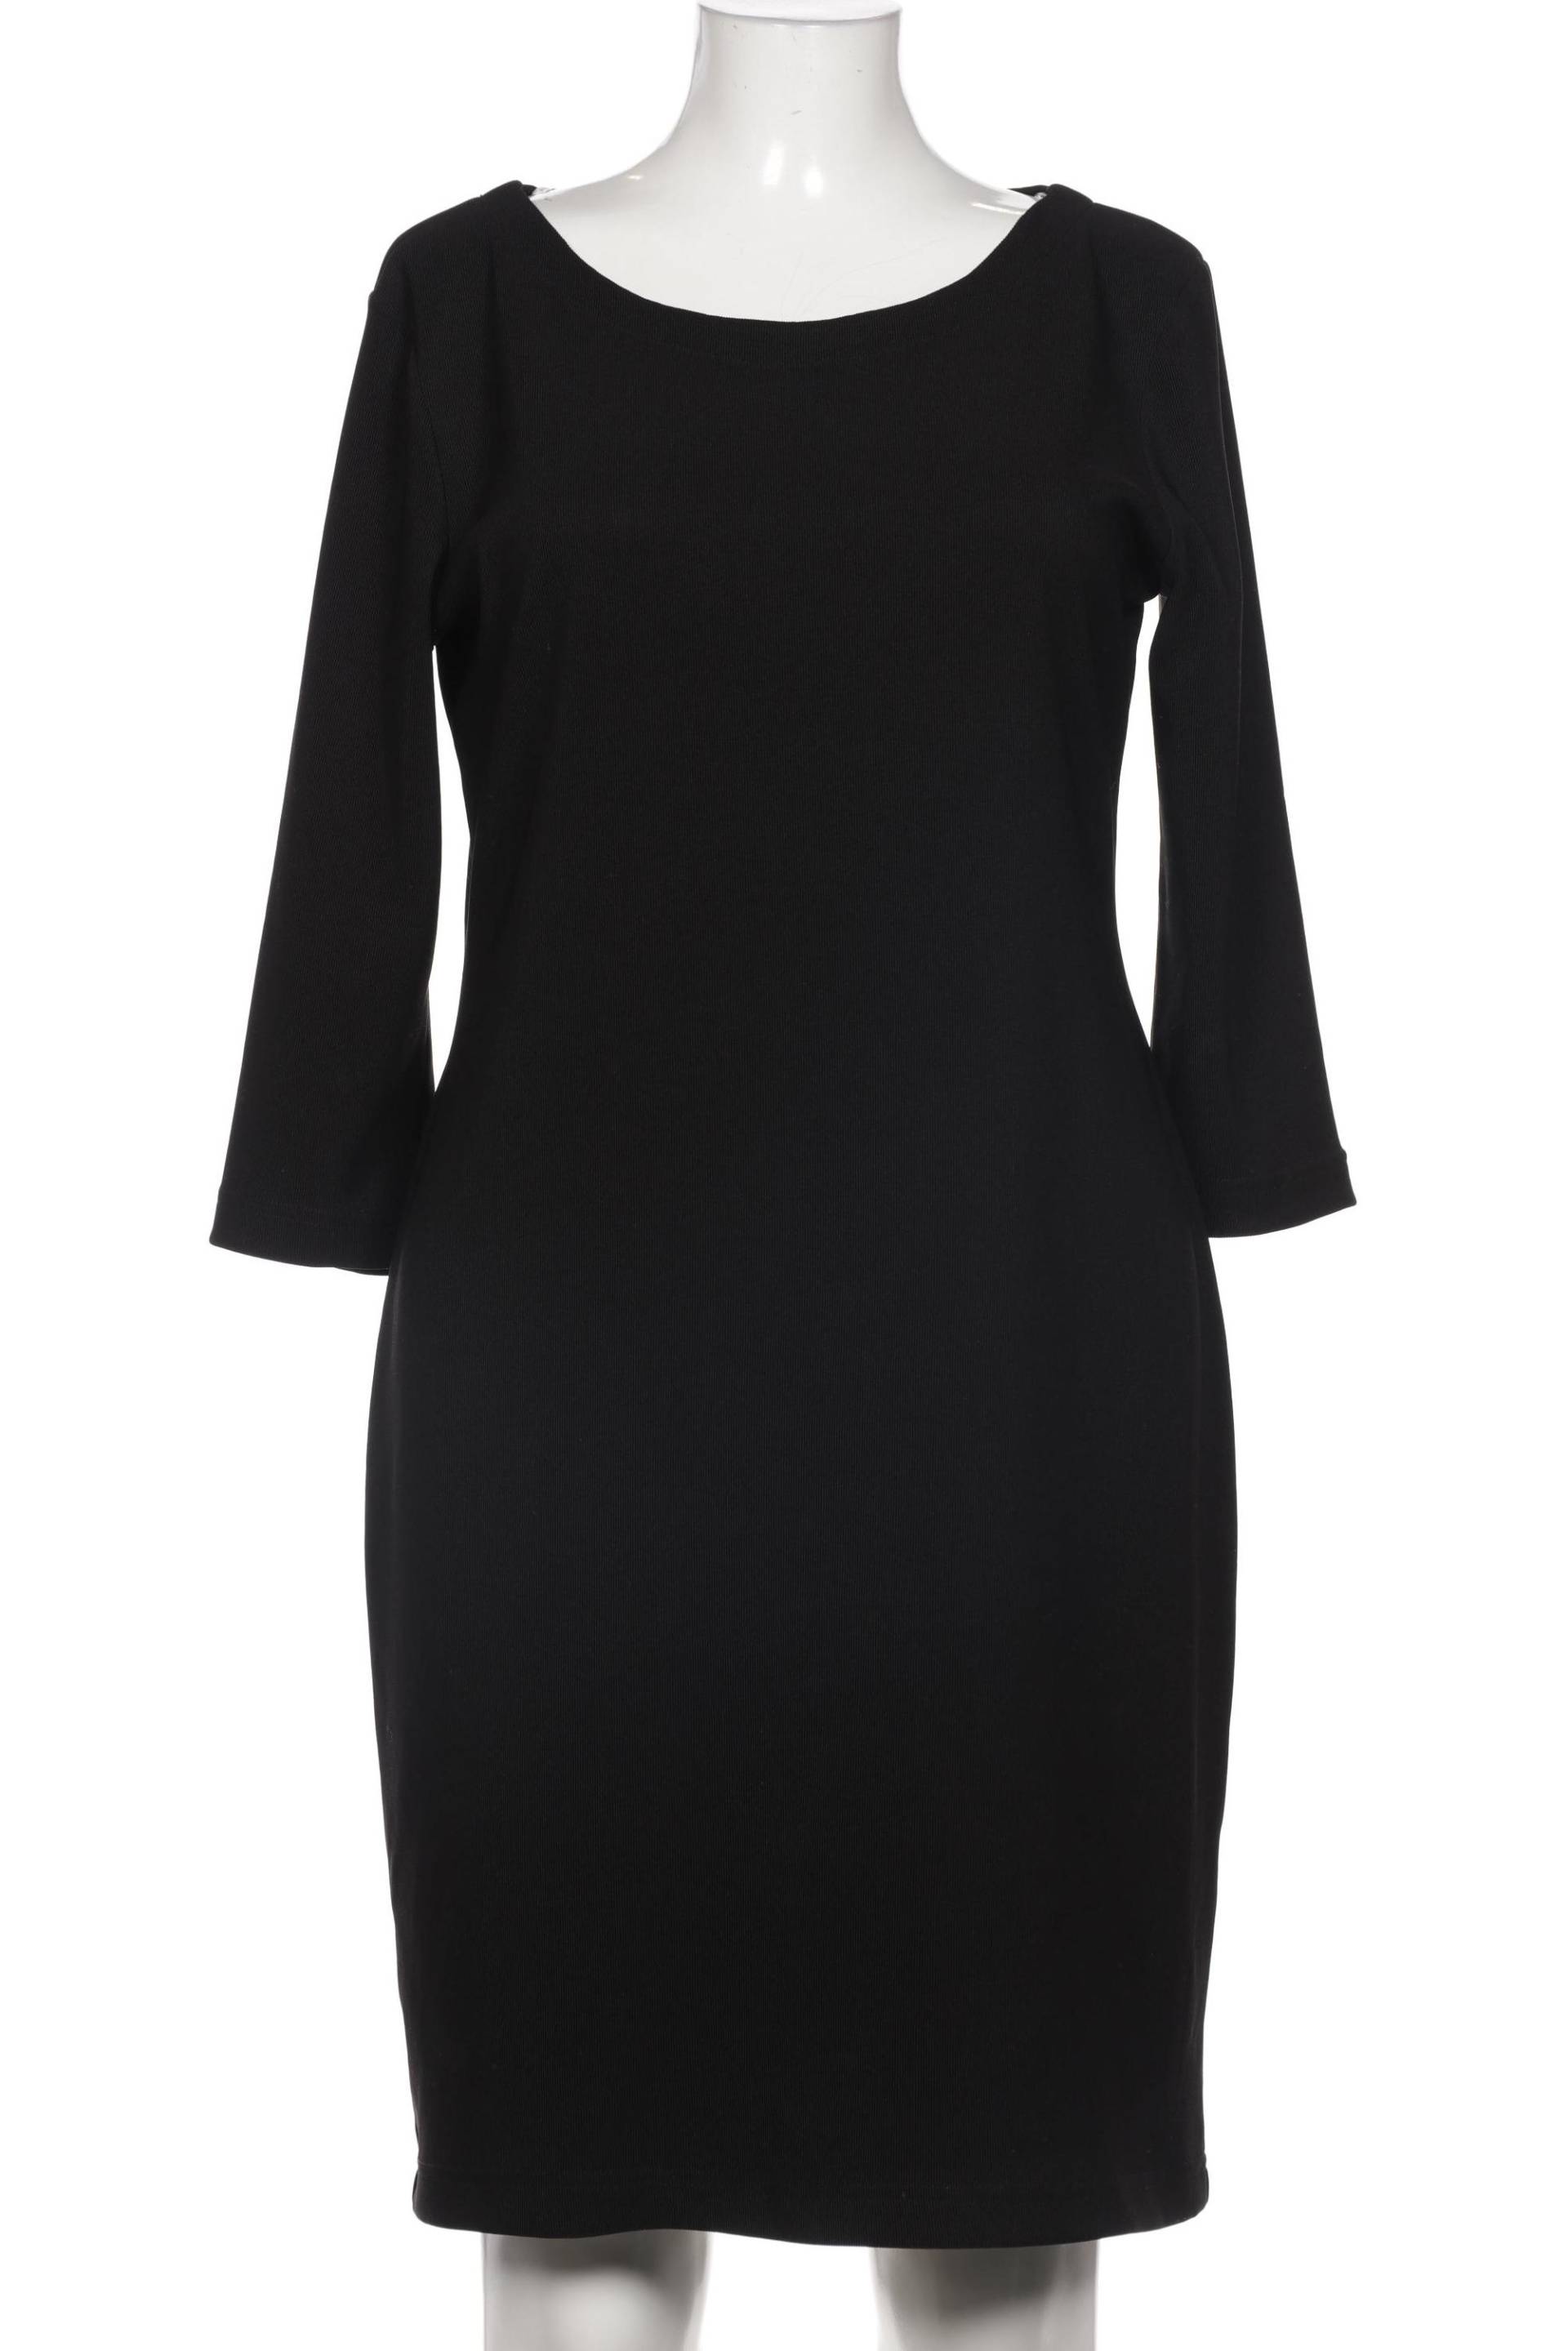 Opus Damen Kleid, schwarz von Opus